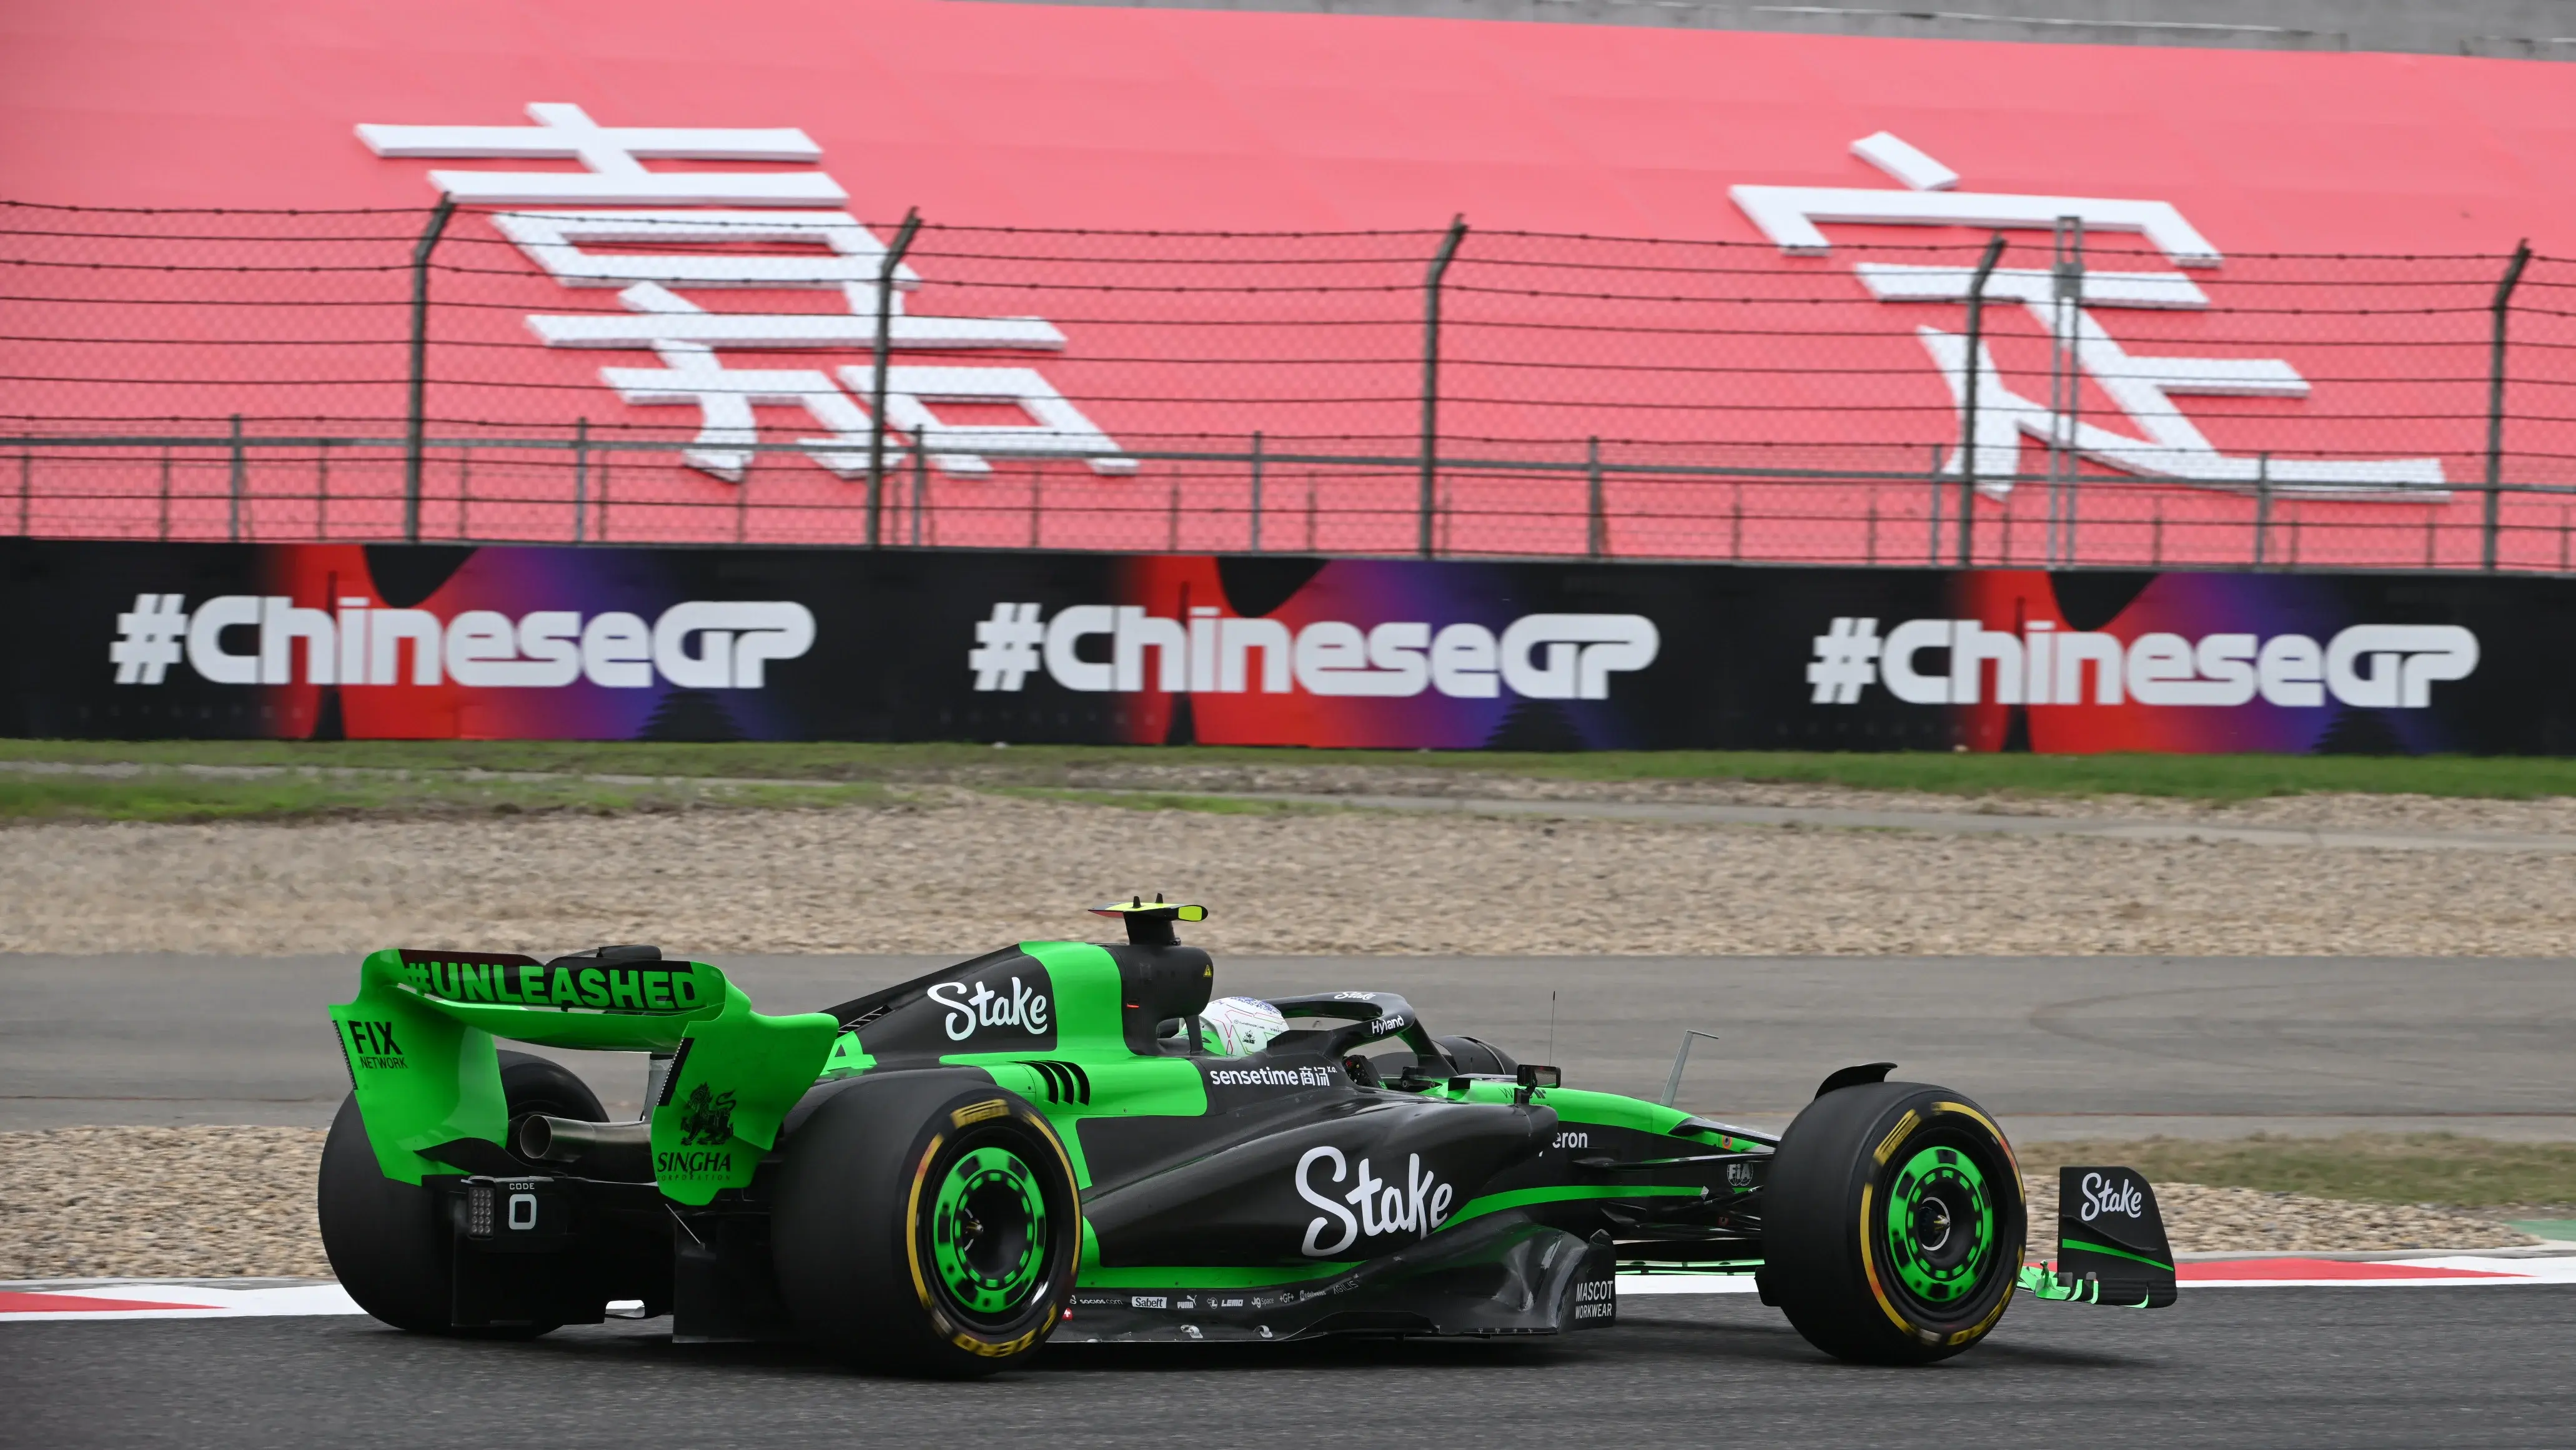 En China, el equipo Kick Sauber tuvo un gran rendimiento, principalmente en clasificación I Fuente: Sauber